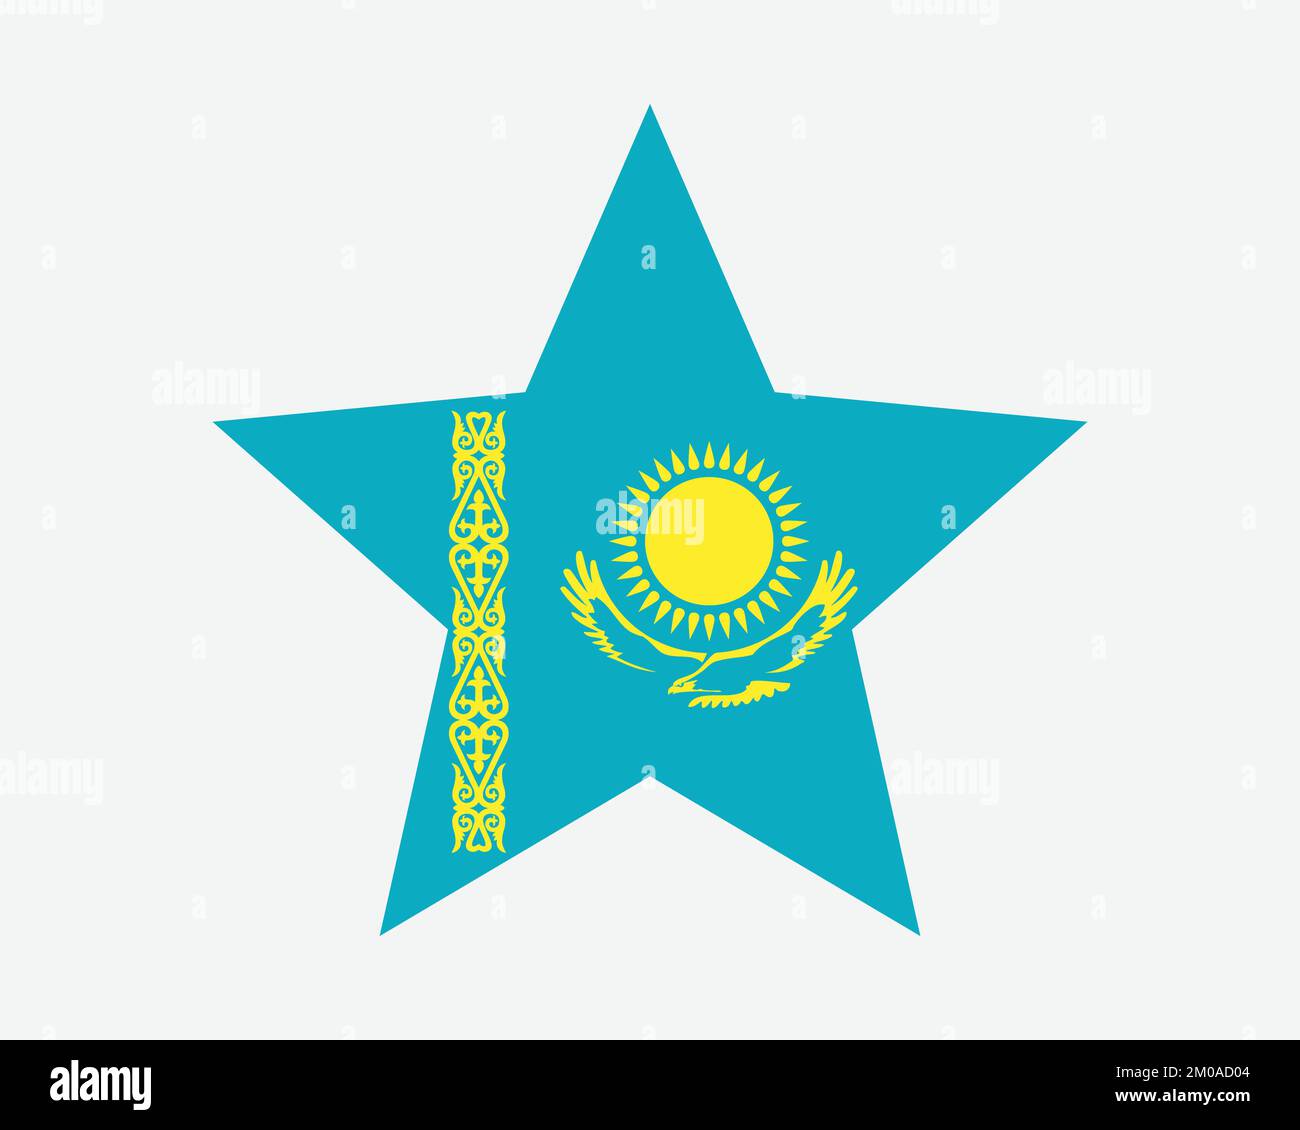 Kazakhstan Star Flag. Kazakhstani Star Shape Flag. Country National Banner Icon Symbol Vector Flat Artwork Graphic Illustration Stock Vector